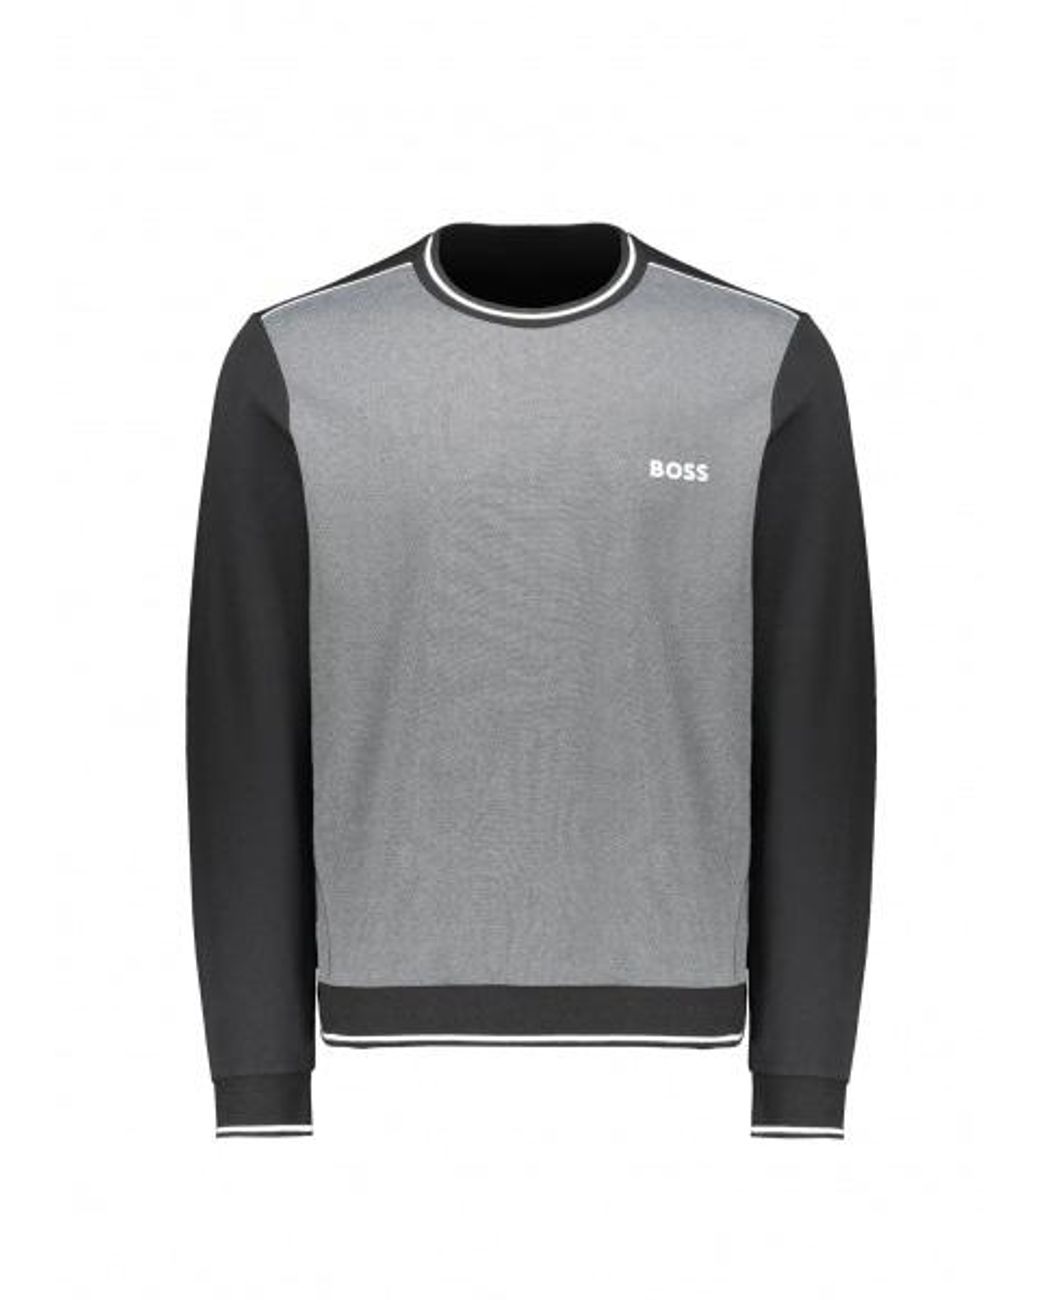 BOSS by HUGO BOSS Tracksuit Sweatshirt in Grey for Men | Lyst Canada